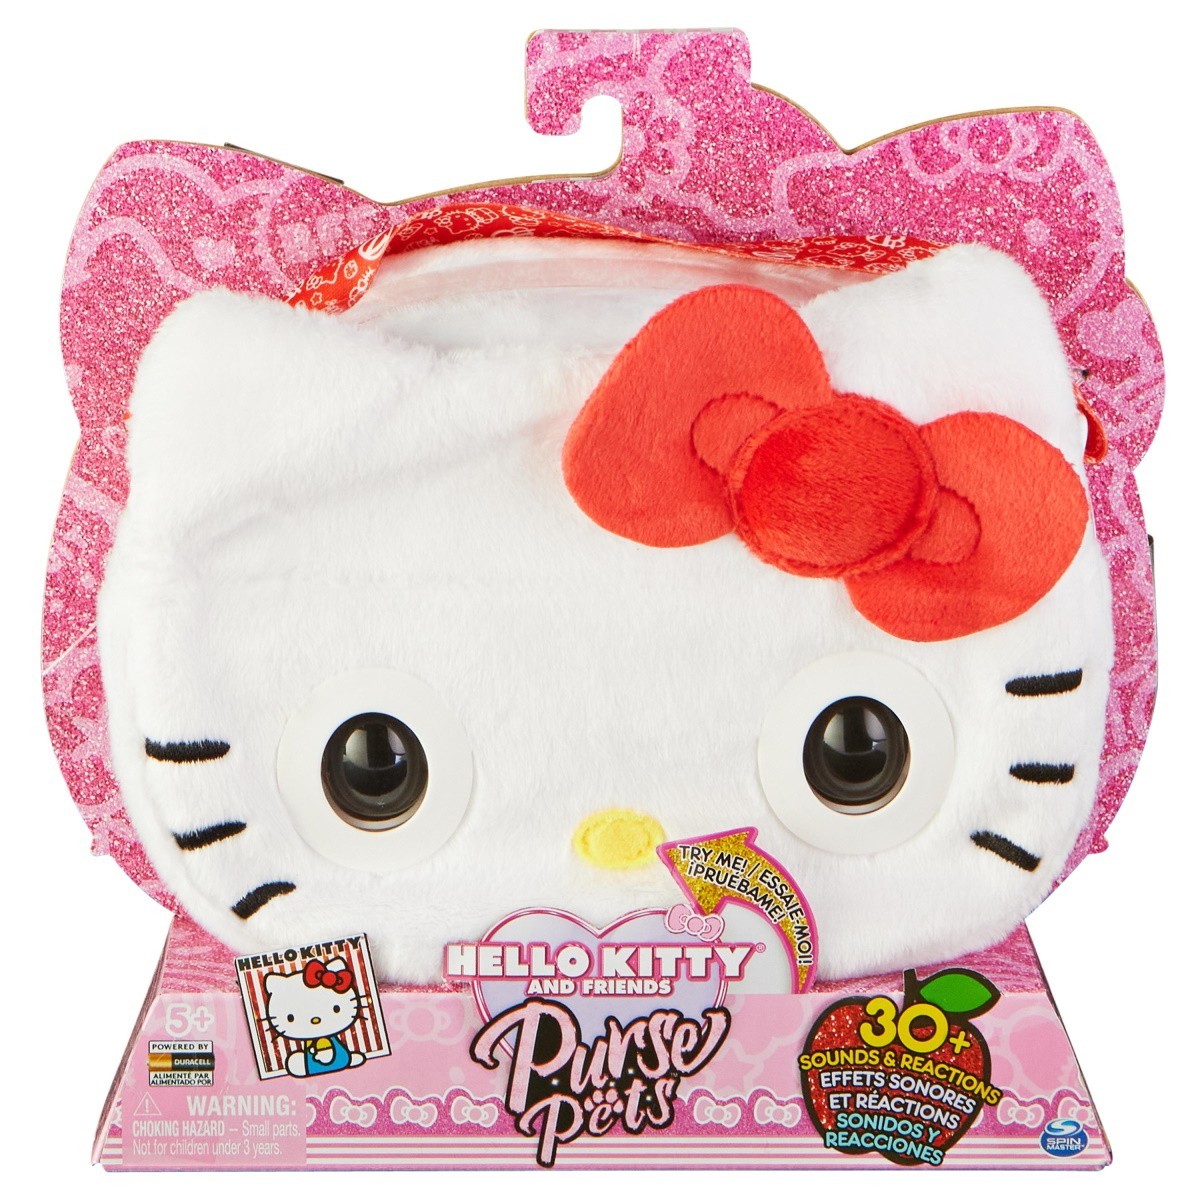 Coffret de voyage beauté - Hello Kitty - Coffret cadeau